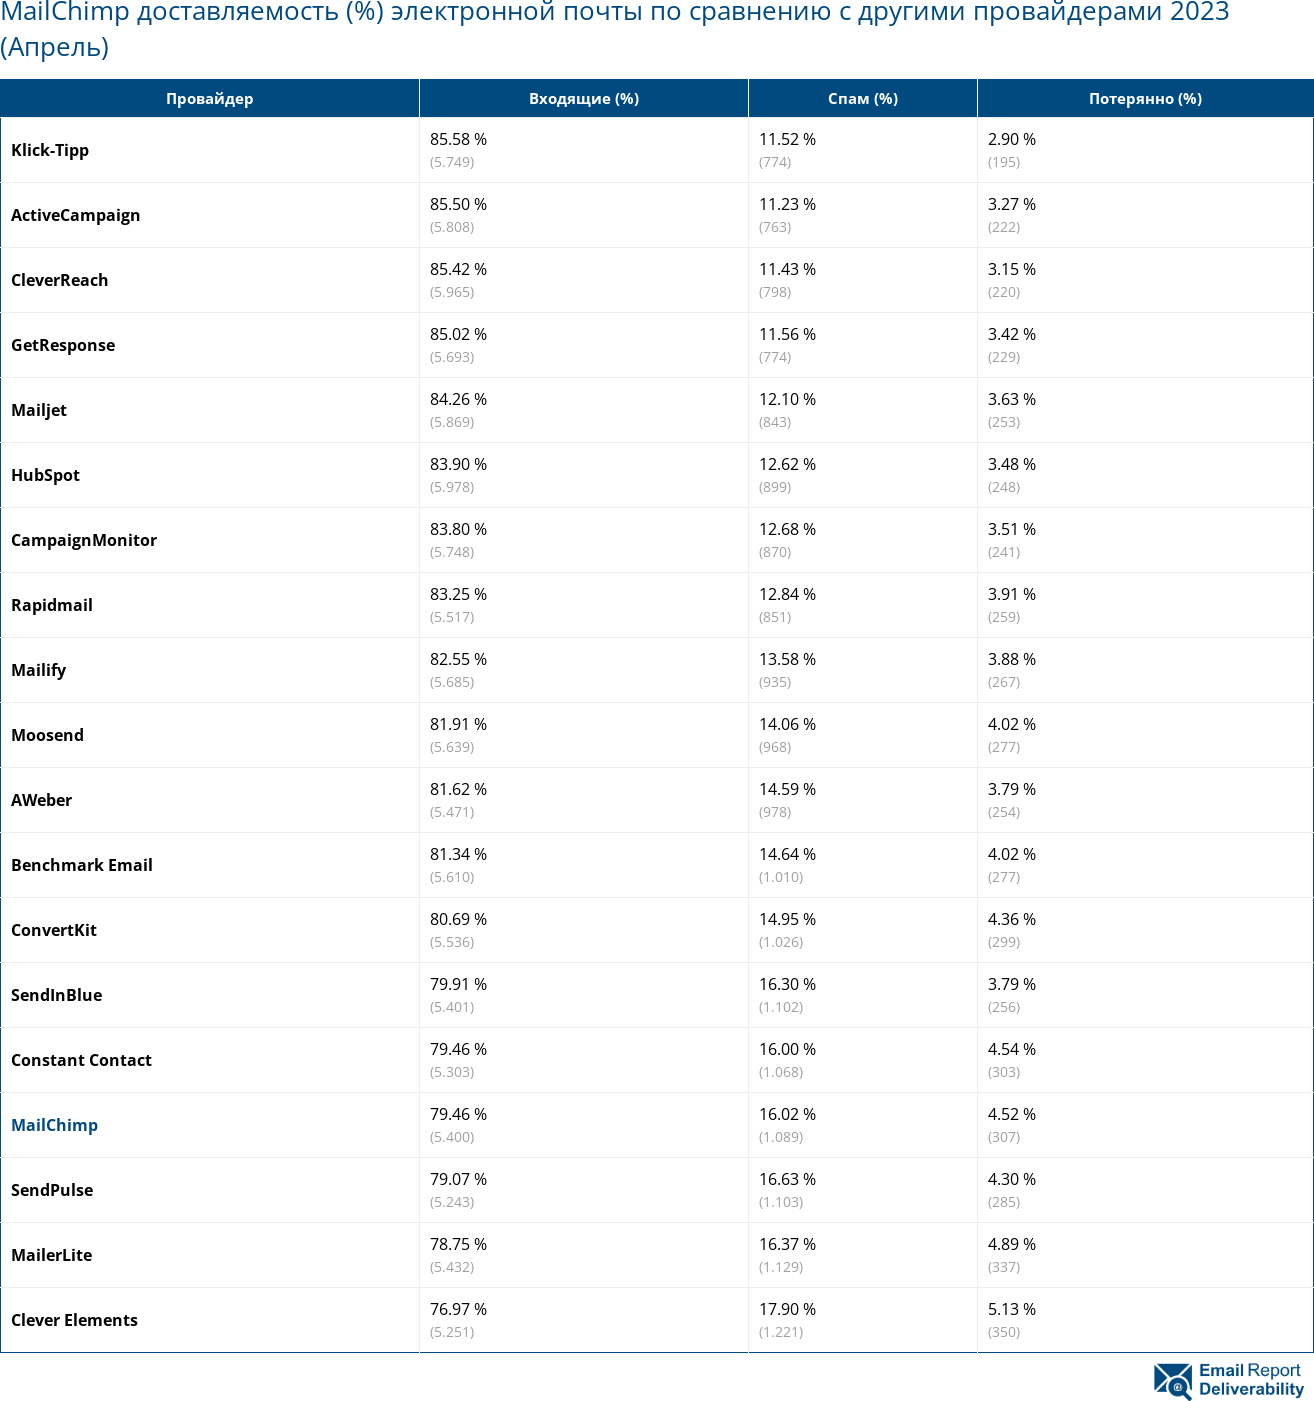 MailChimp доставляемость (%) электронной почты по сравнению с другими провайдерами 2023 (Апрель)